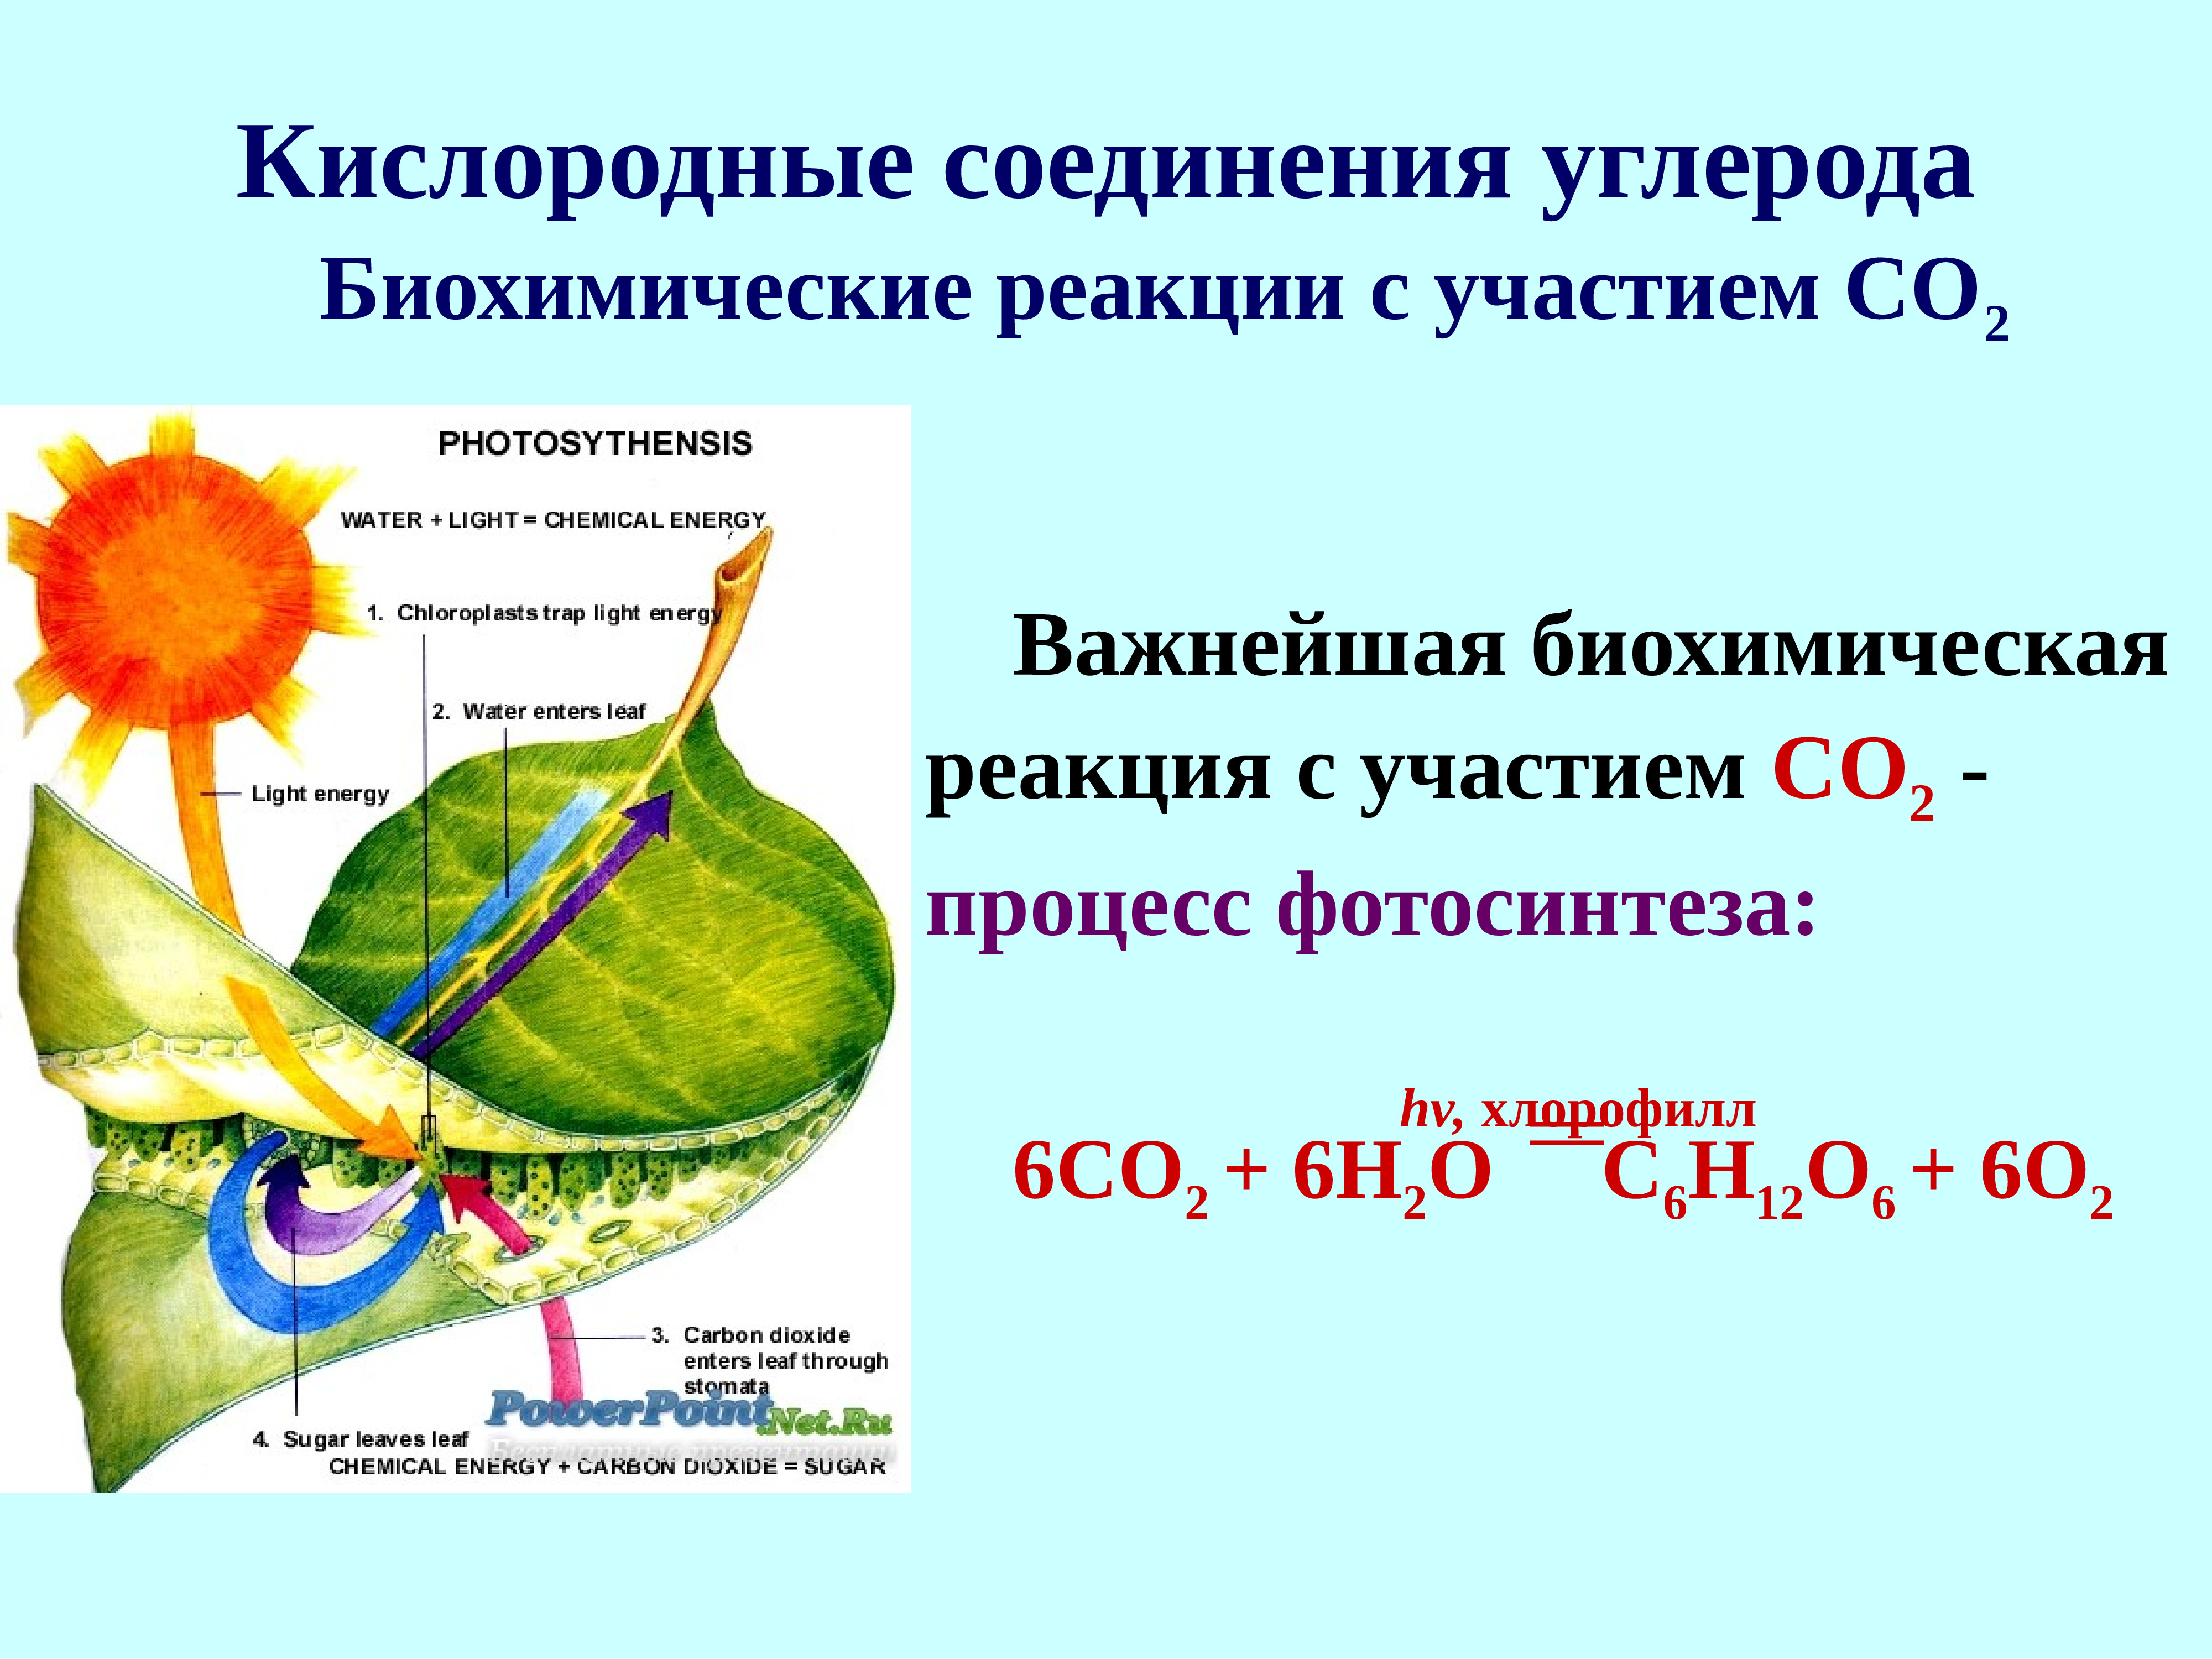 Роль углерода в реакции